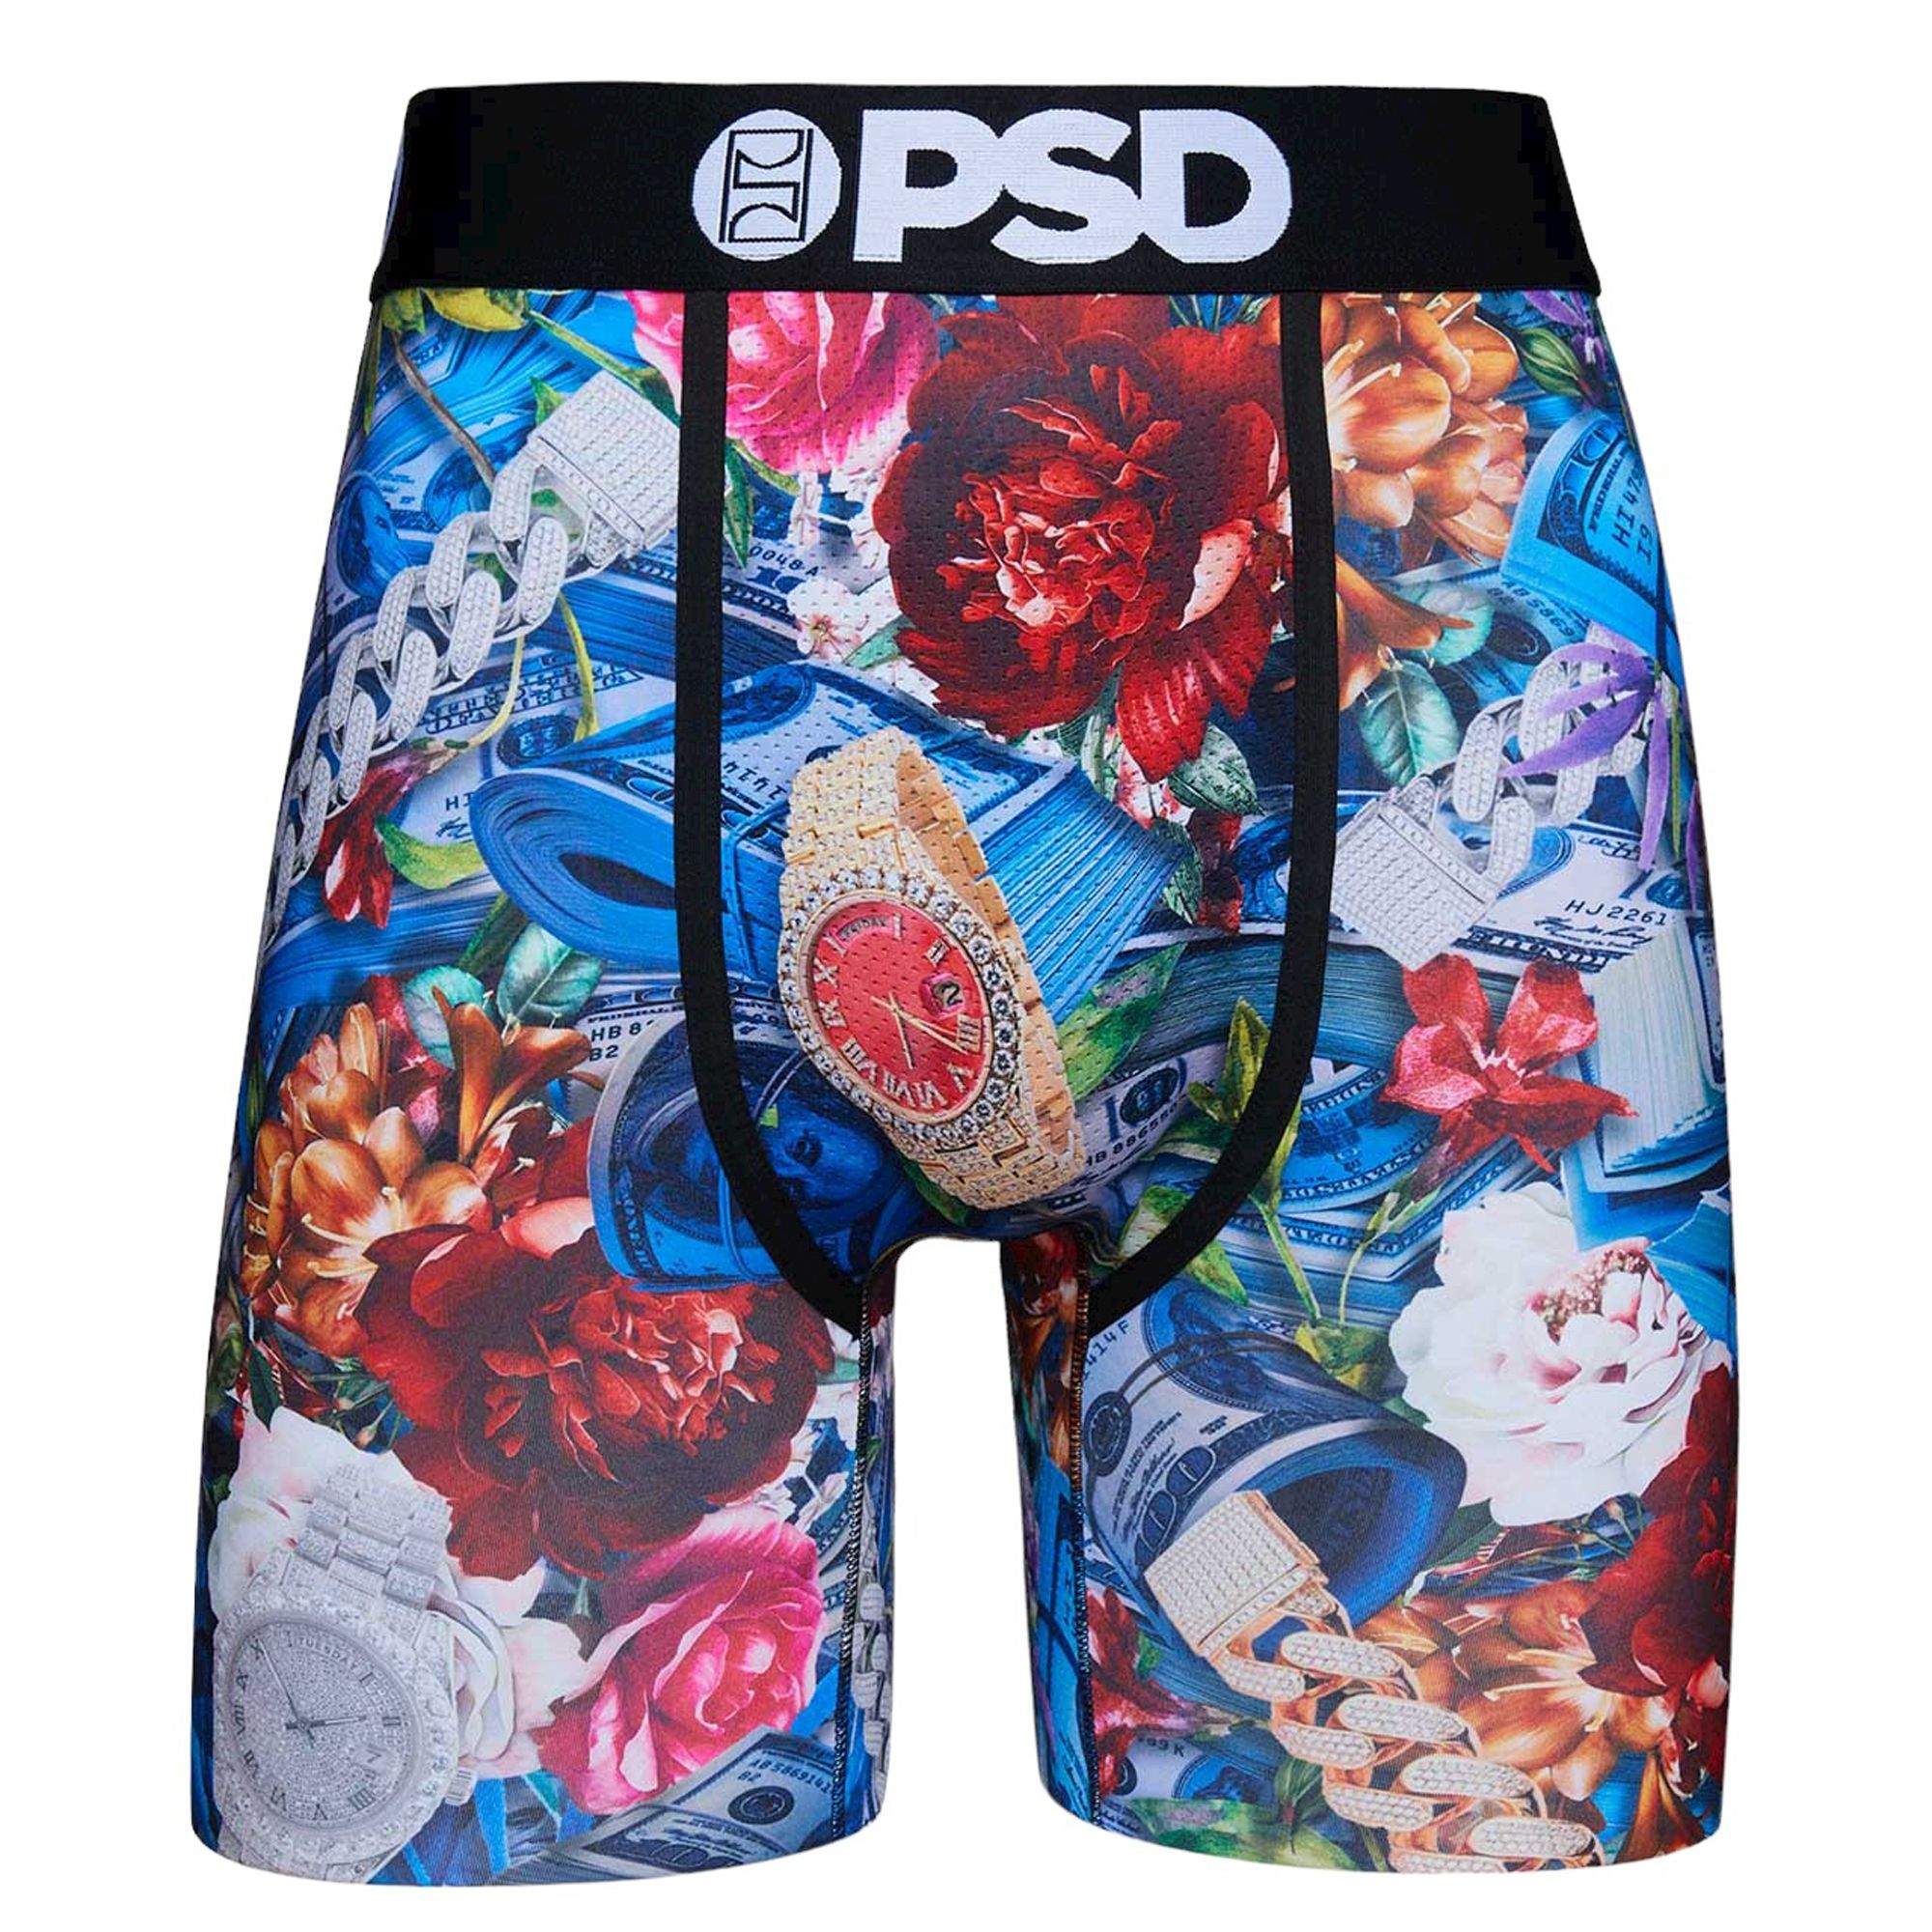 Wild Child Sports Bra - PSD Underwear